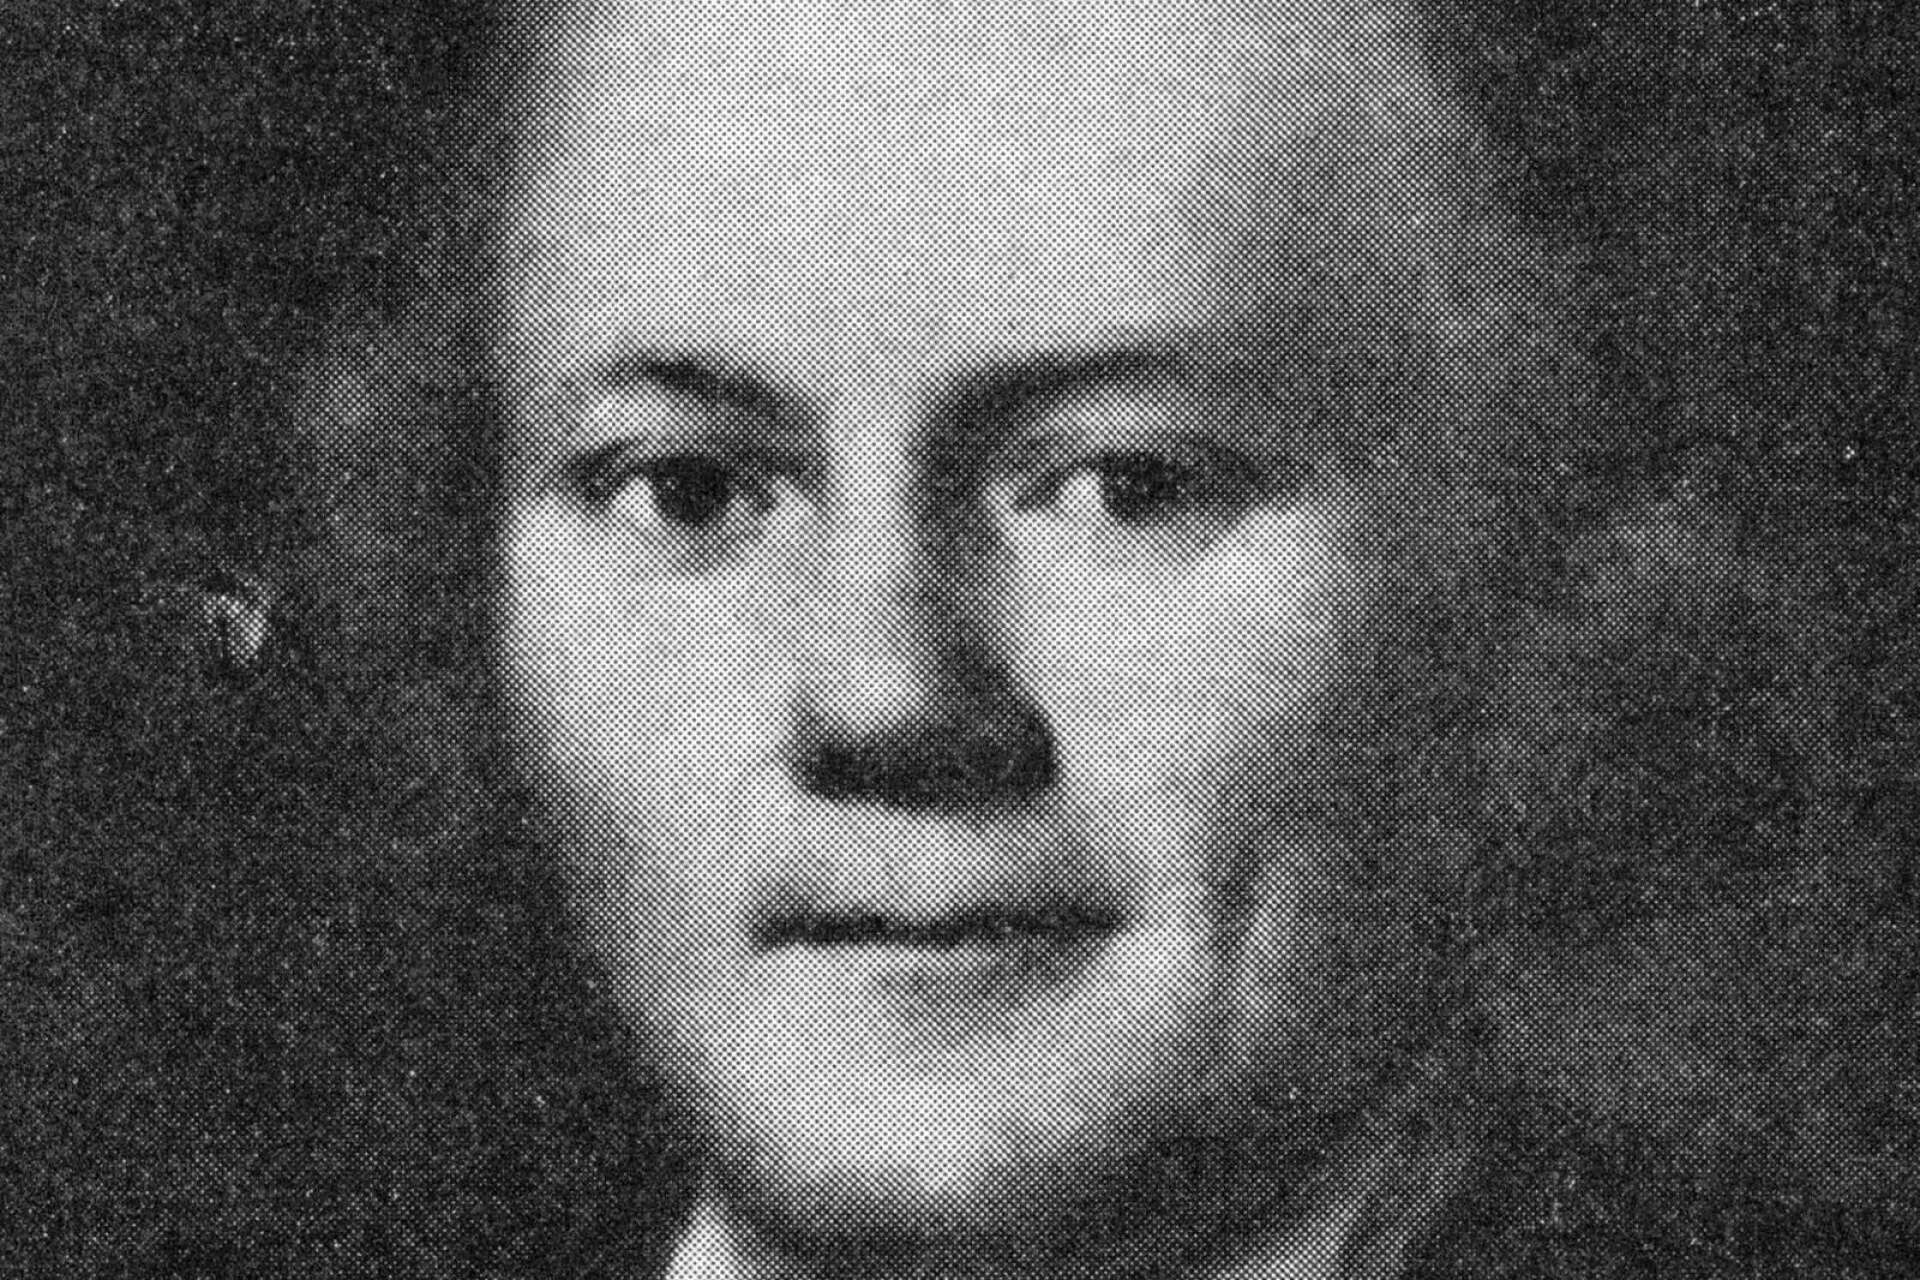 Olavus Linderholm